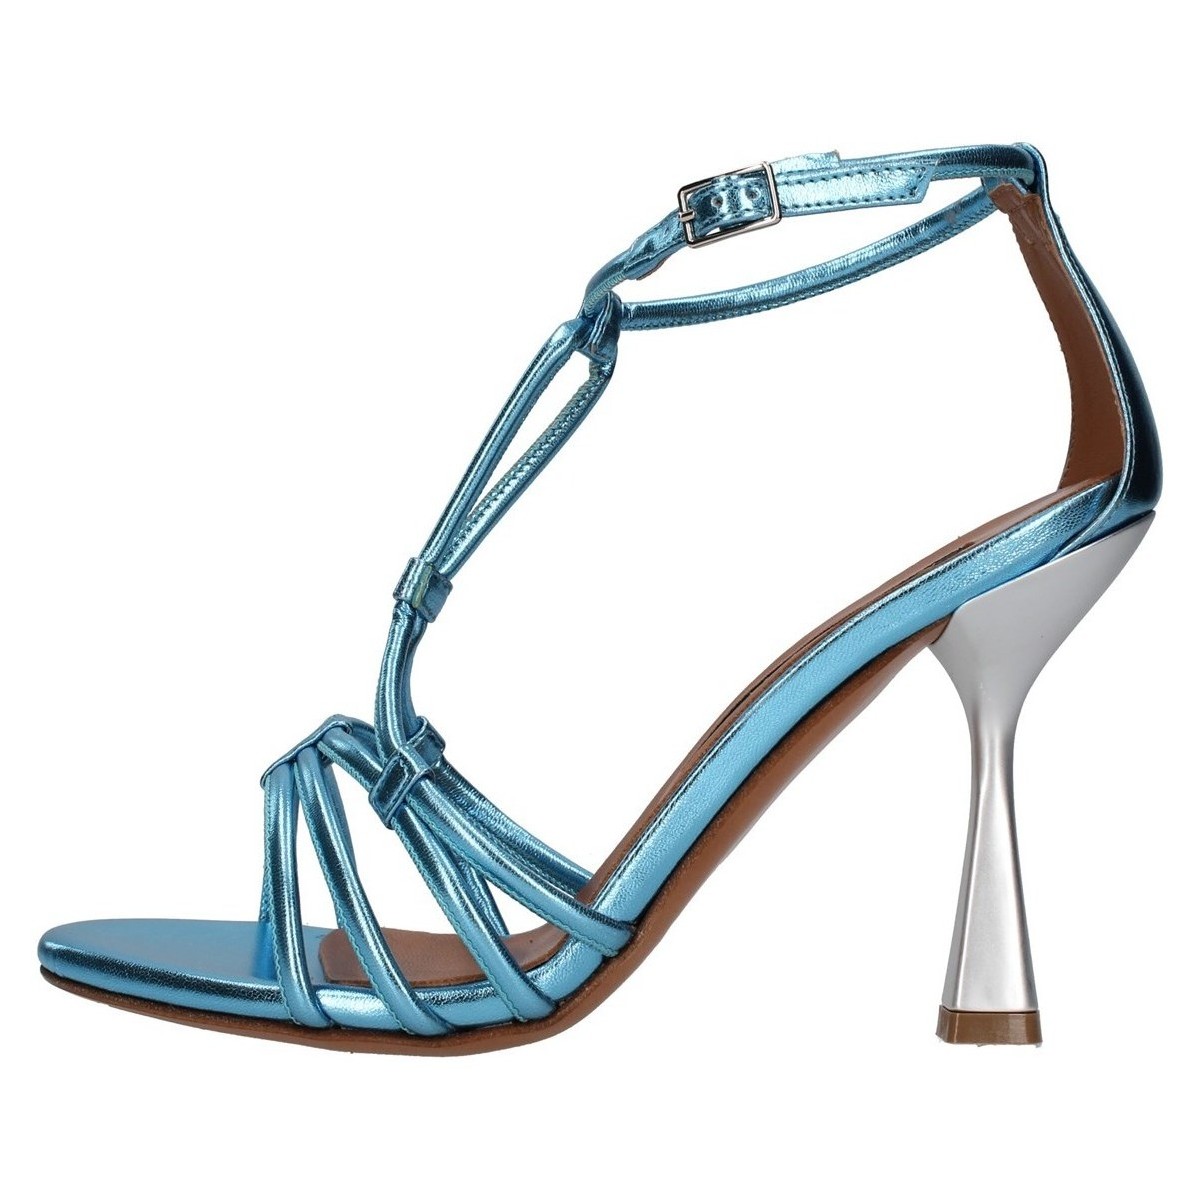 Chaussures Femme Sandales et Nu-pieds Albano A3093 Bleu